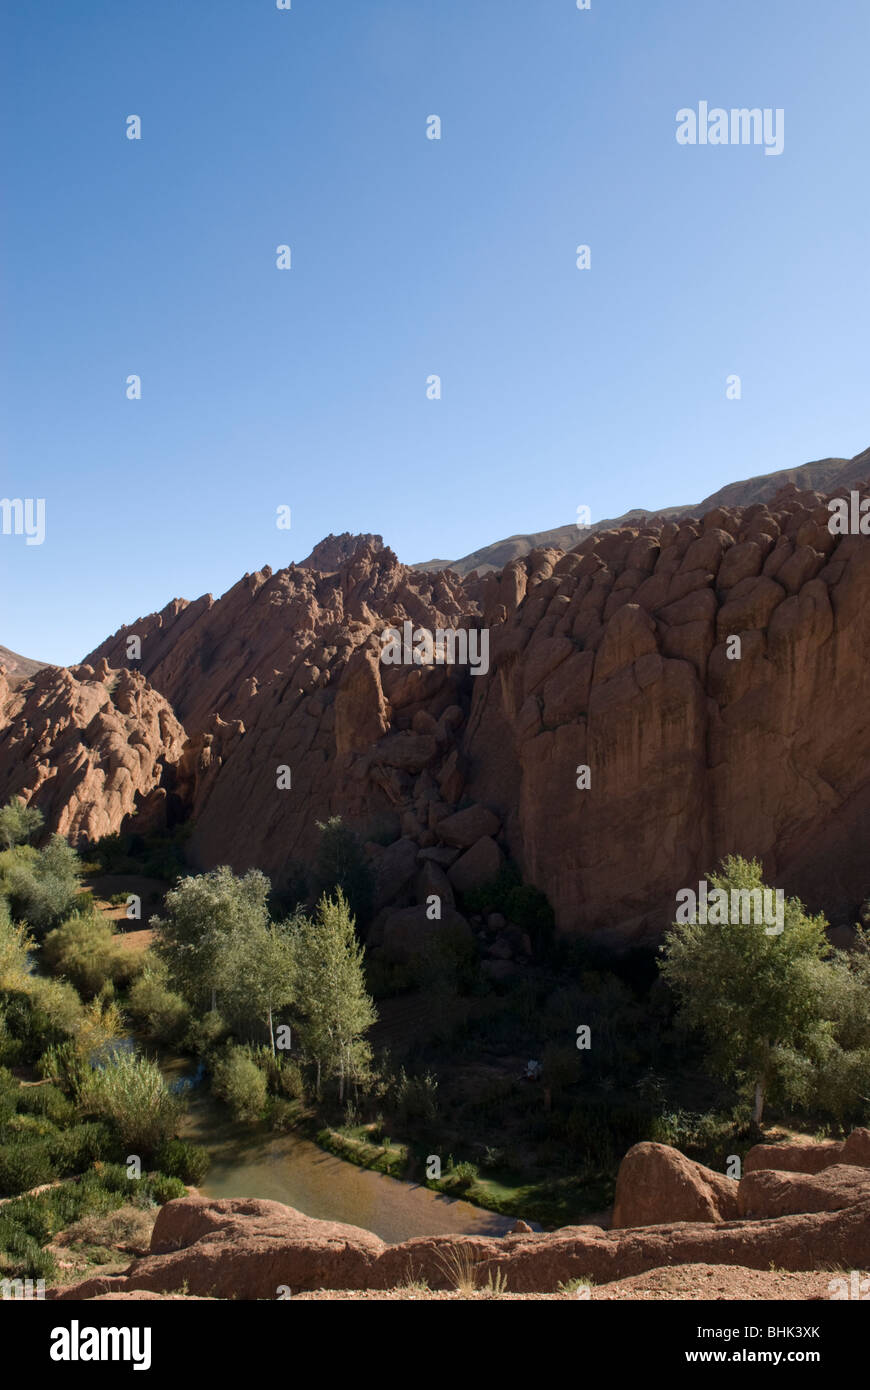 Les doigts de singe (Doigts de singes), des formations rocheuses, des montagnes du Haut Atlas, au Maroc. Banque D'Images